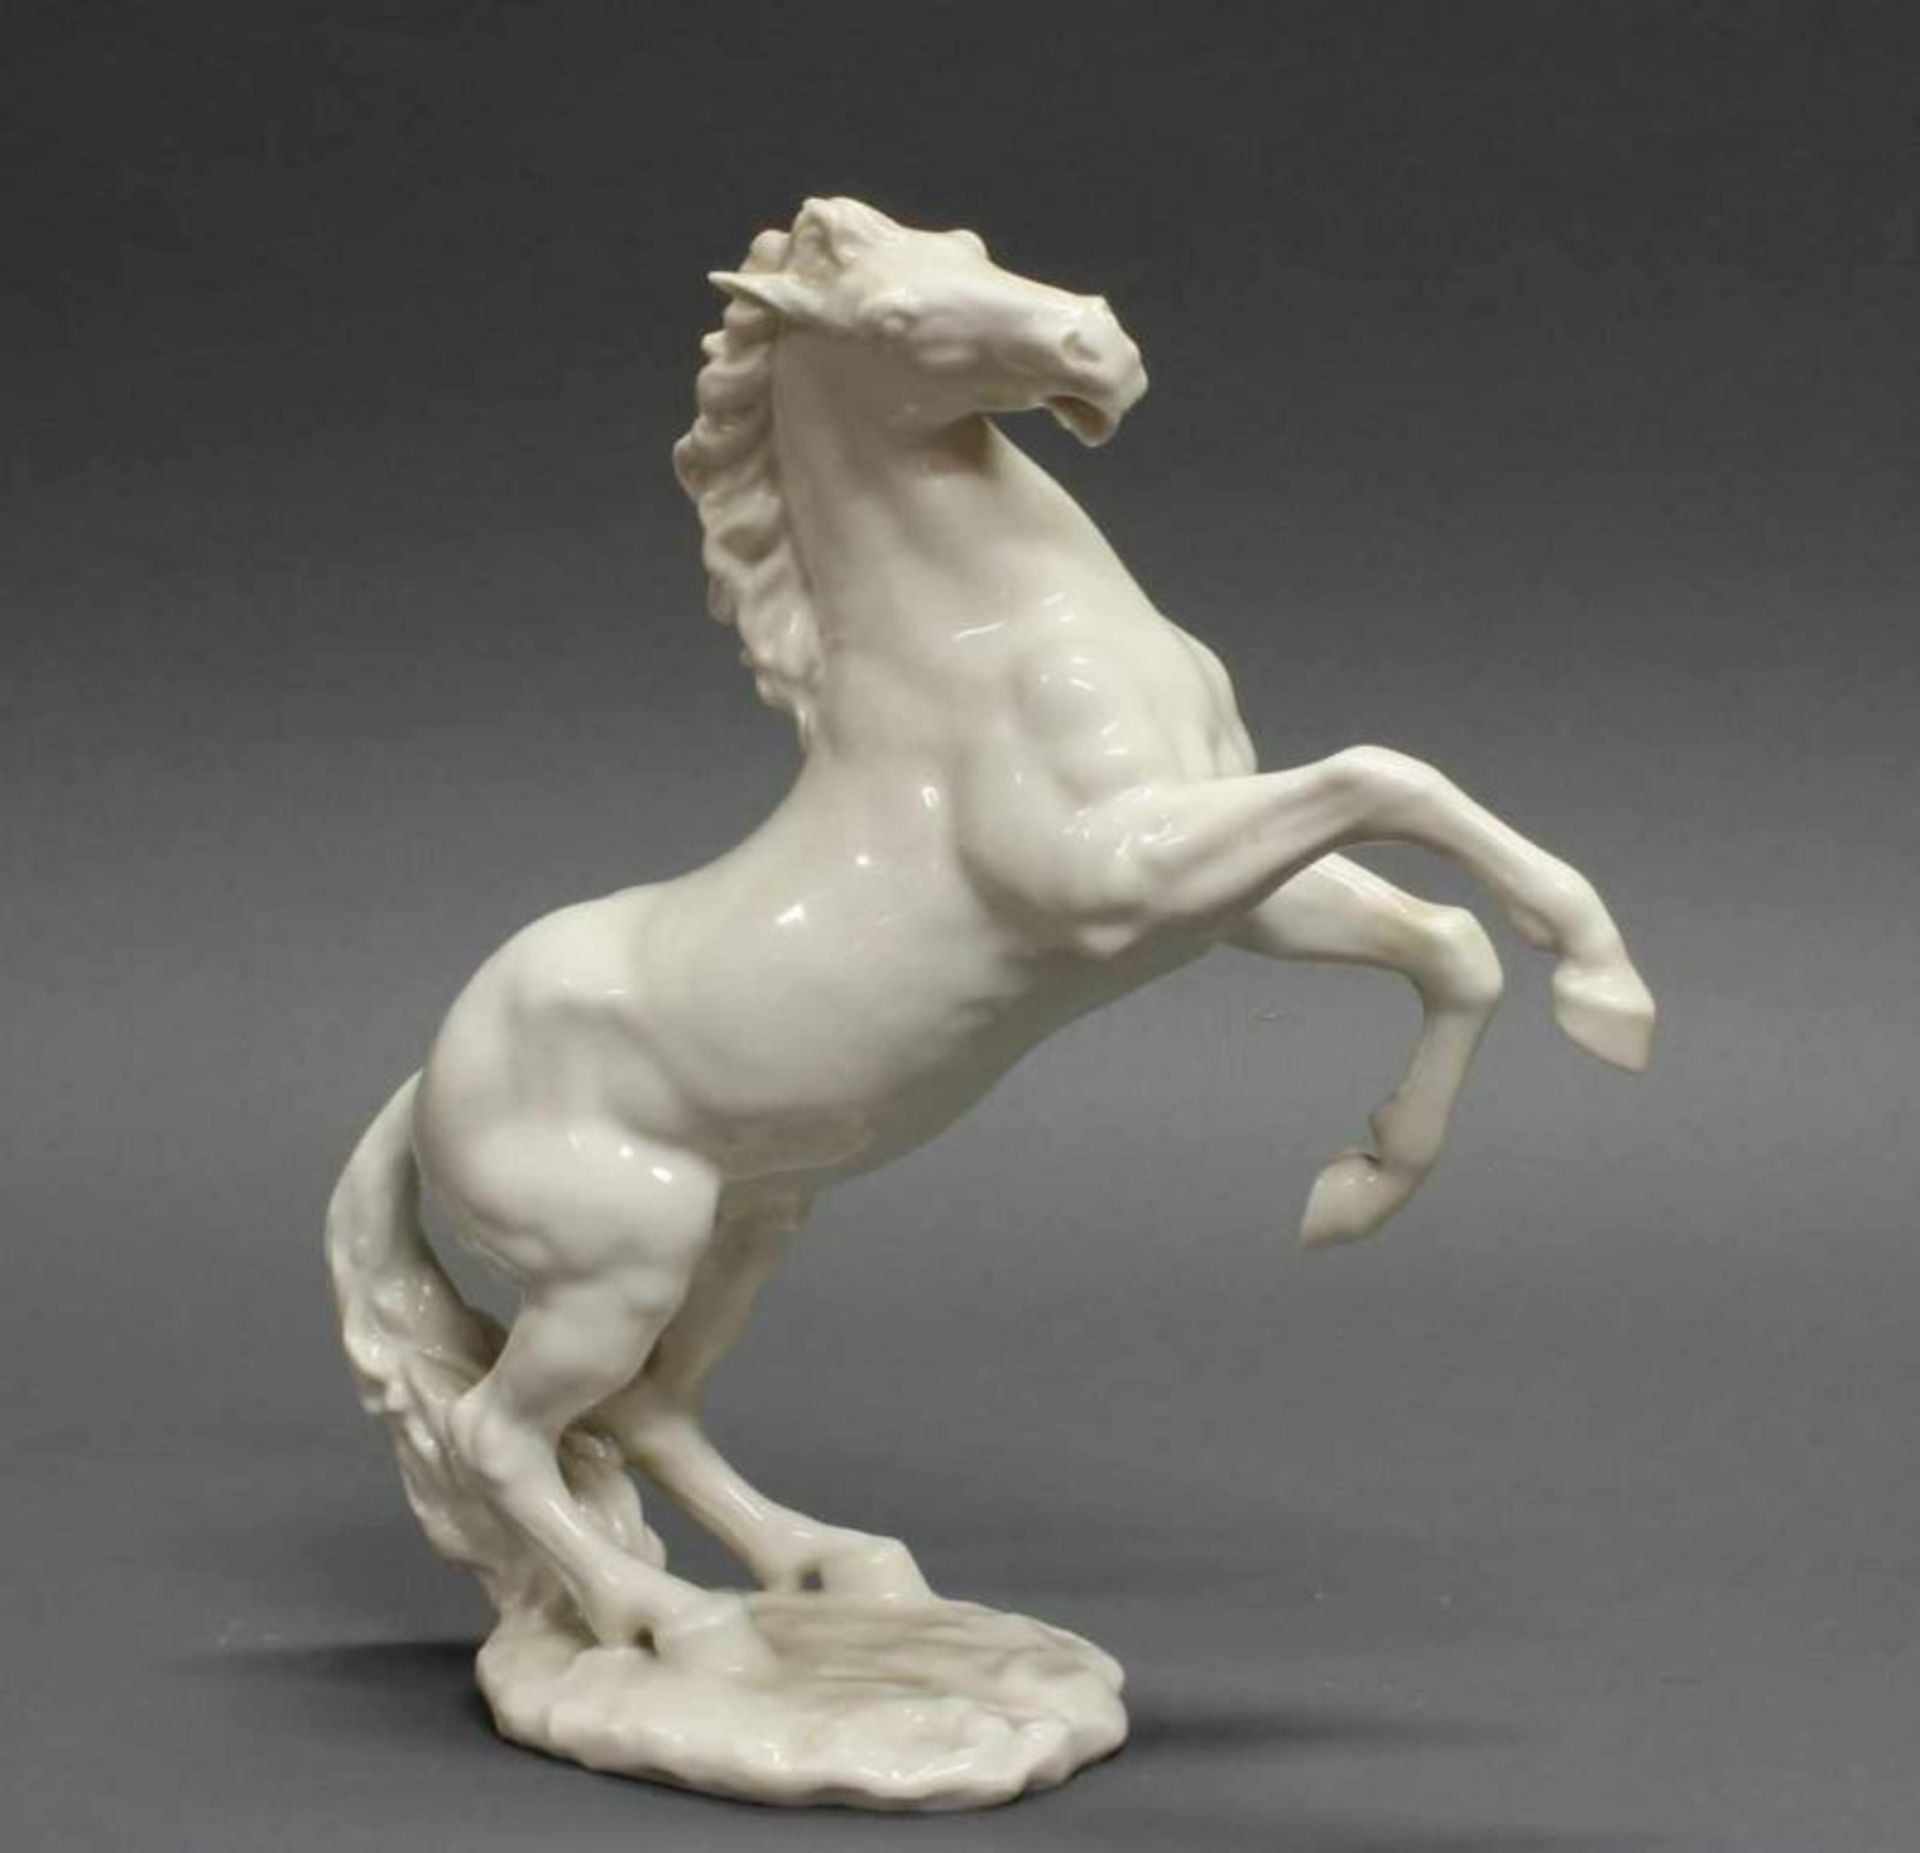 Porzellanfigur, "Steigendes Pferd", Hutschenreuther, Weißporzellan, Modellentwurf von Gunther